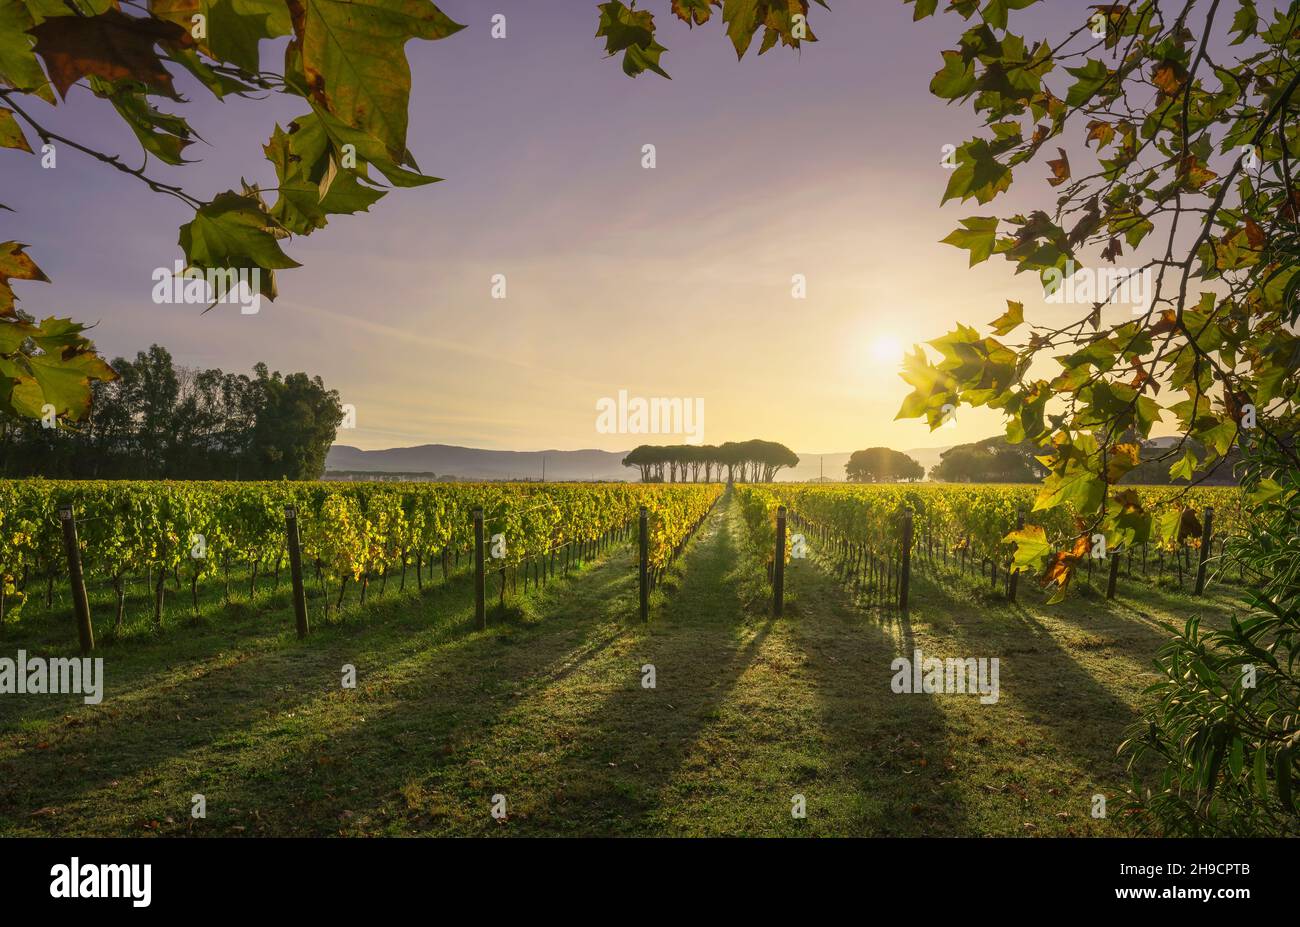 Vignoble de Bolgheri, et groupe de pins au lever du soleil.Feuilles d'arbre d'avion comme un cadre, saison d'automne.Paysage en Alta Maremme, région Toscane, Italie, EUR Banque D'Images